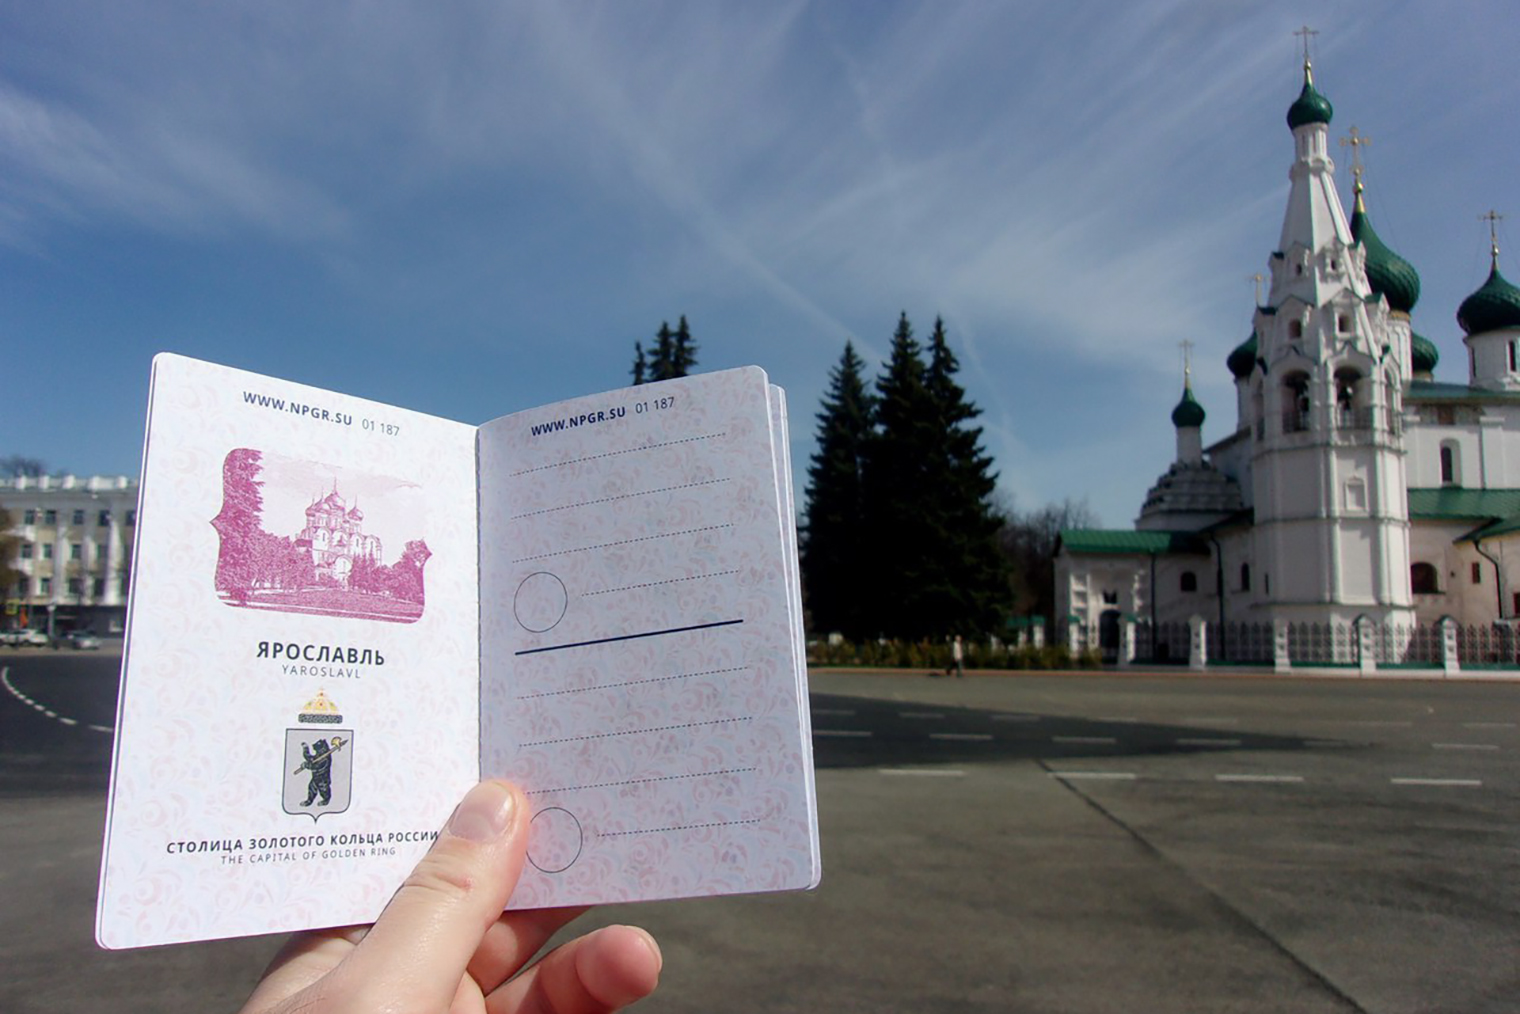 Так выглядит разворот паспорта туриста. Источник: npgr.su